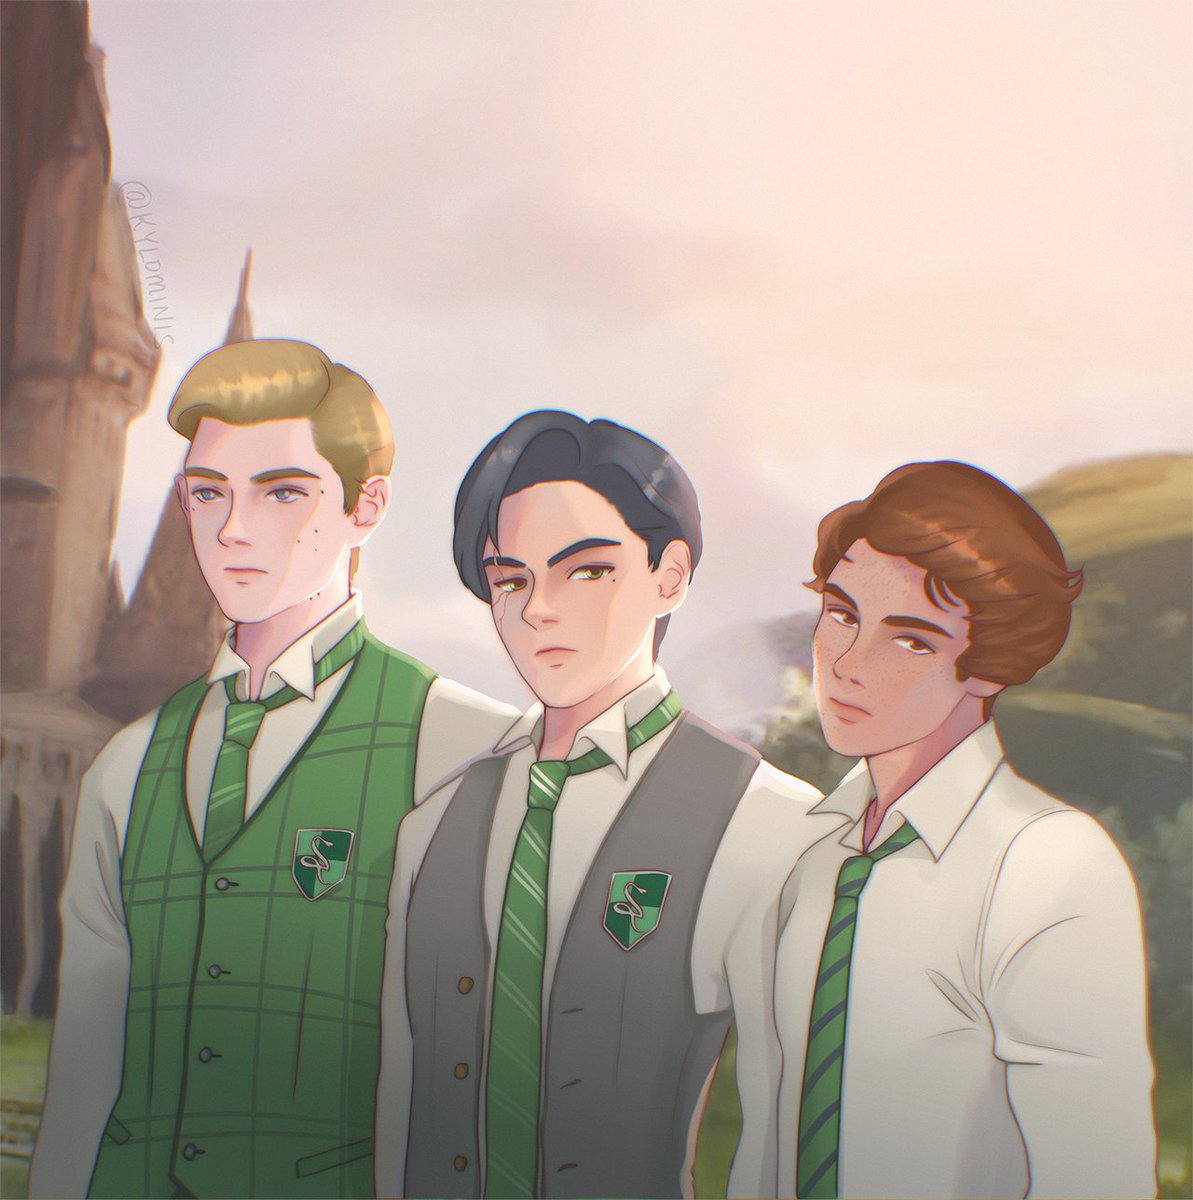 the slytherin boys  #OminisGaunt #HogwartsLegacyMC #SebastianSallow #HogwartsLegacy